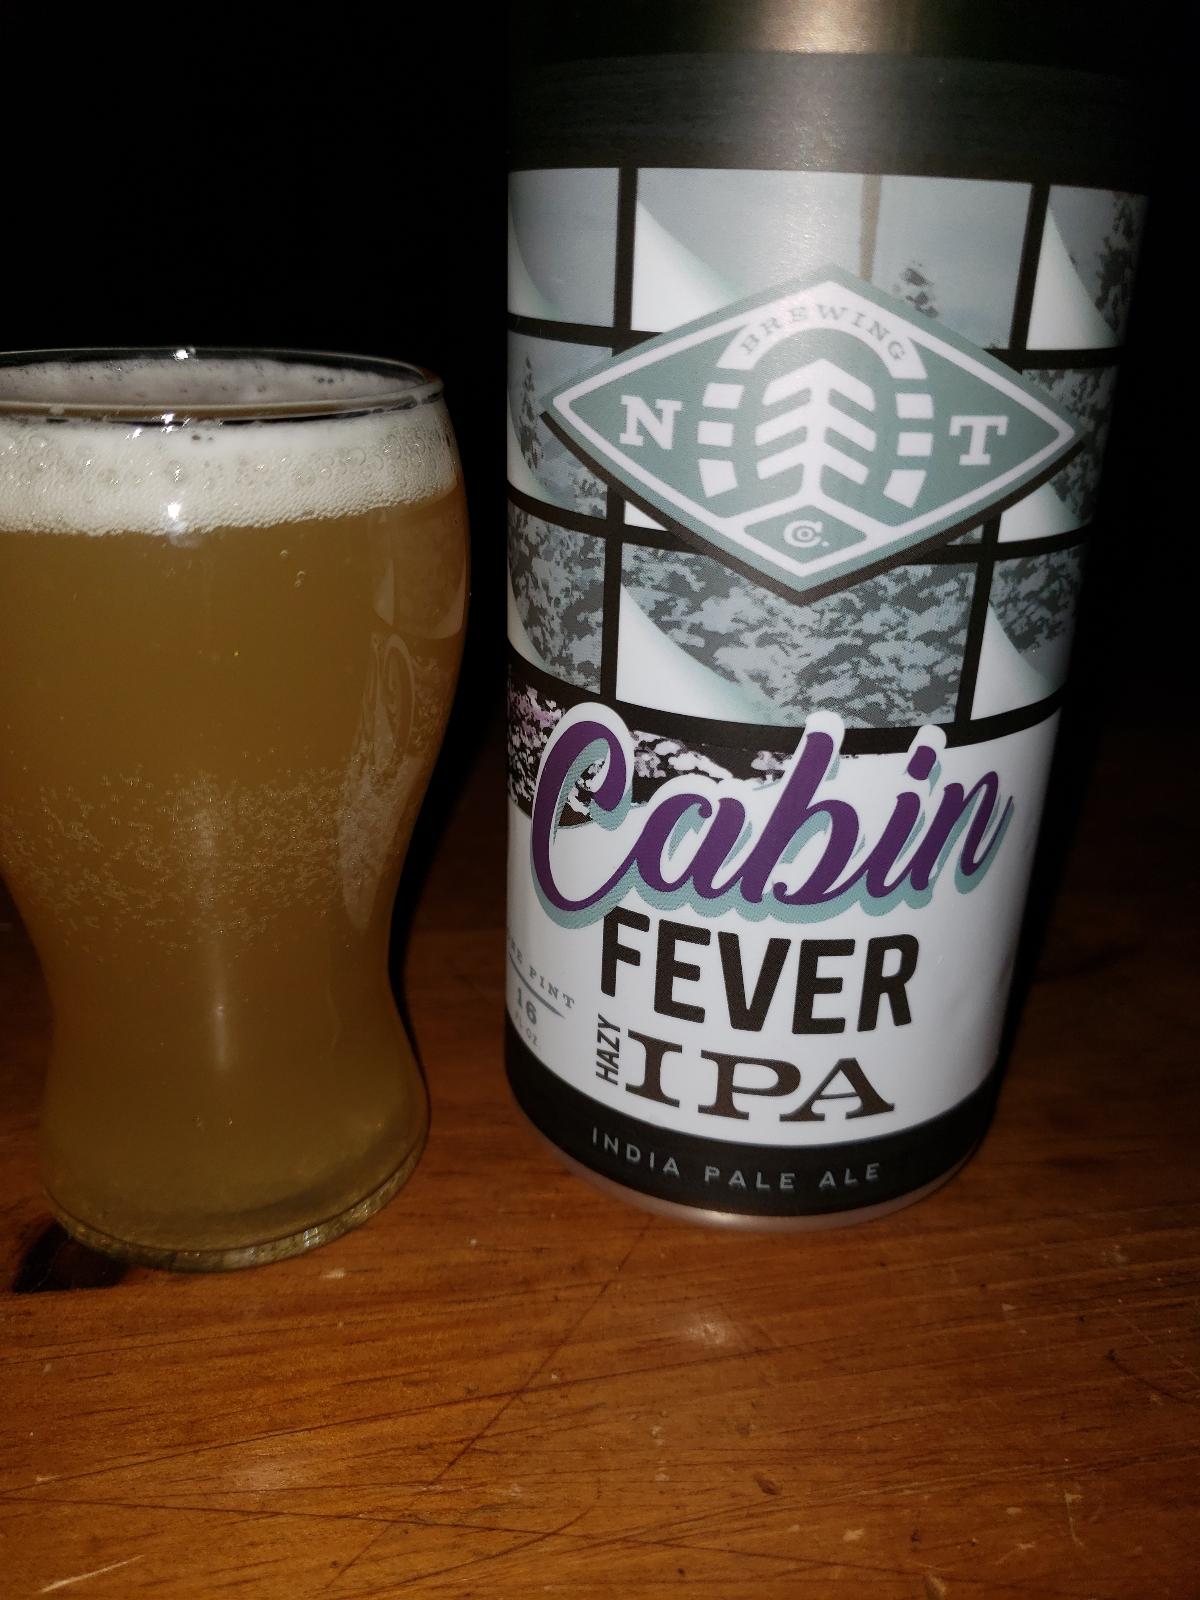 Cabin Fever 